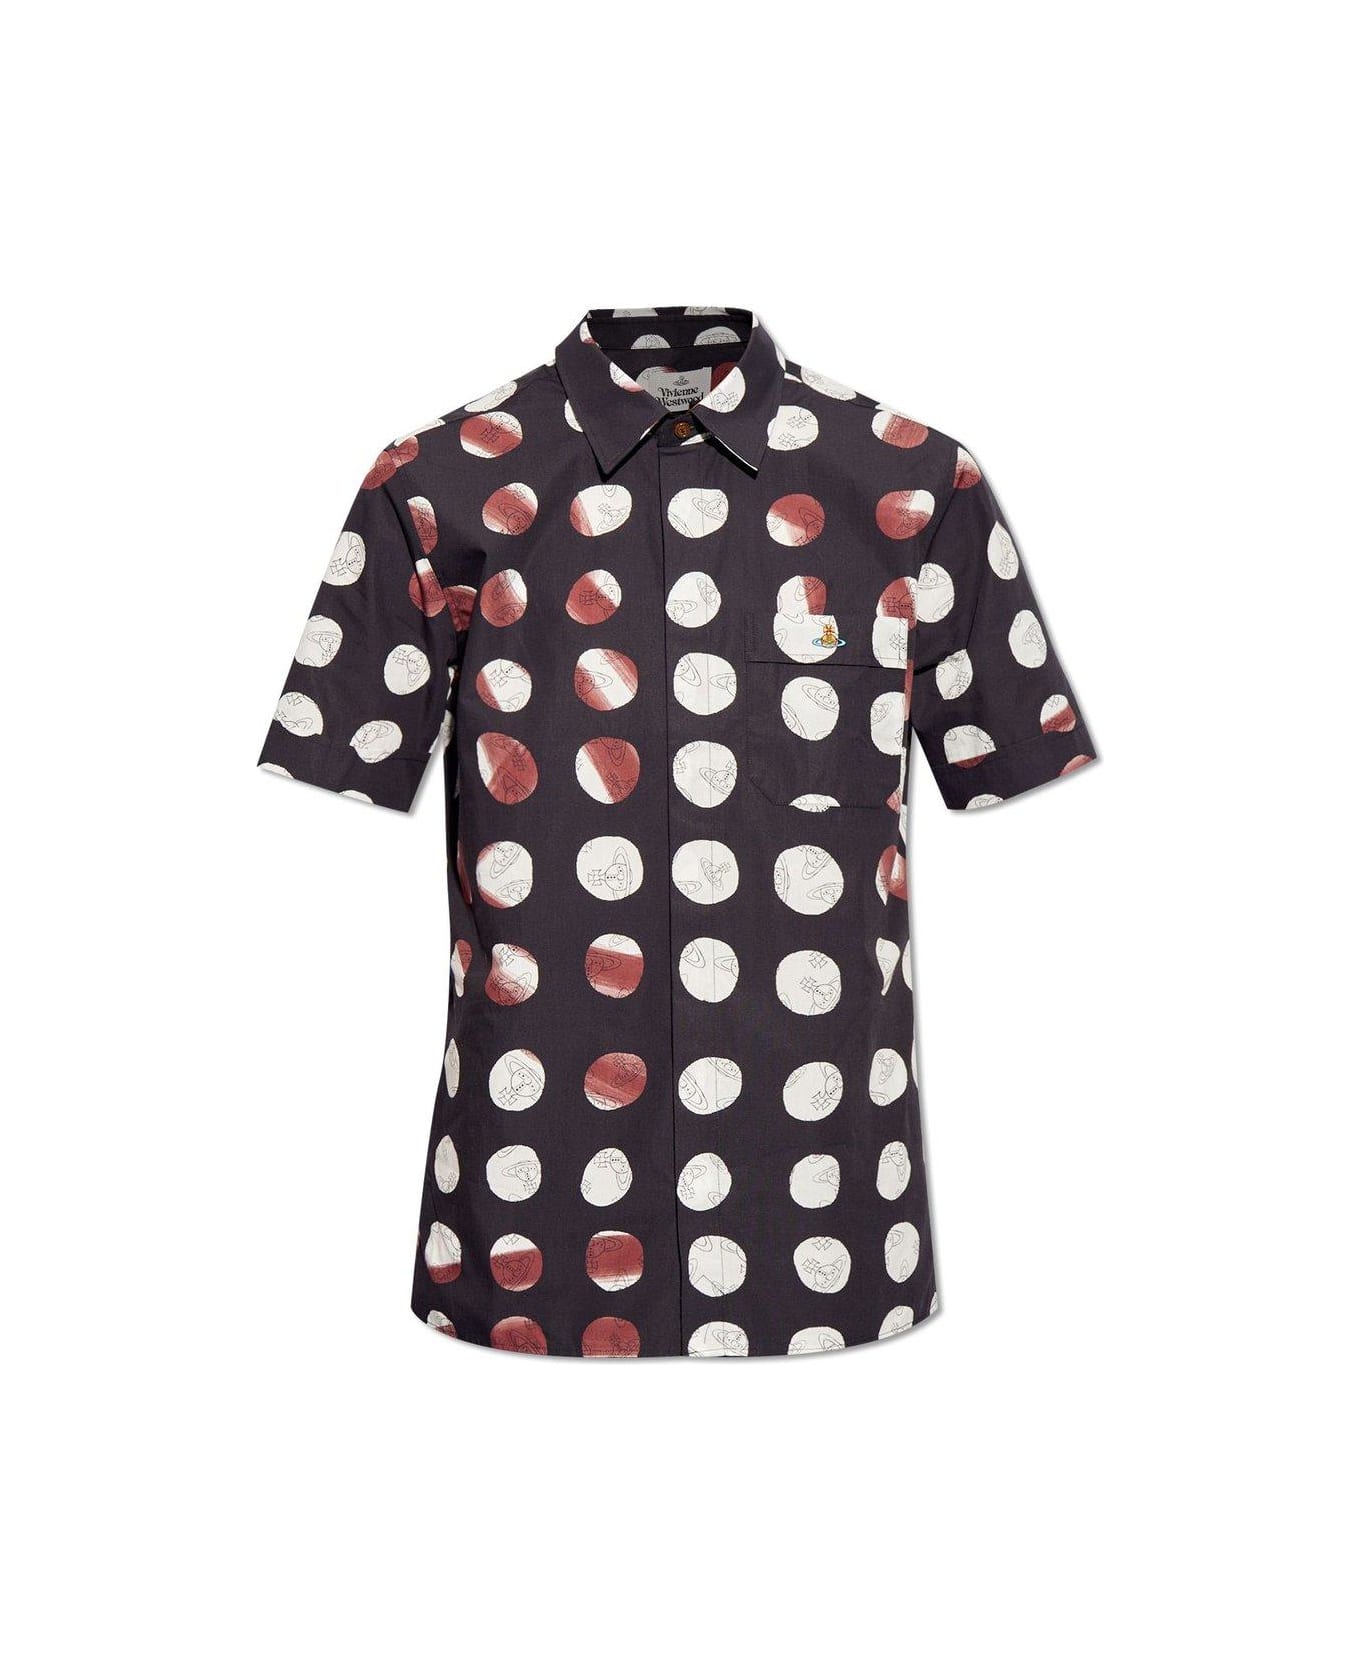 Vivienne Westwood Orb Print Long-sleeved Shirt - Dots Orbs シャツ